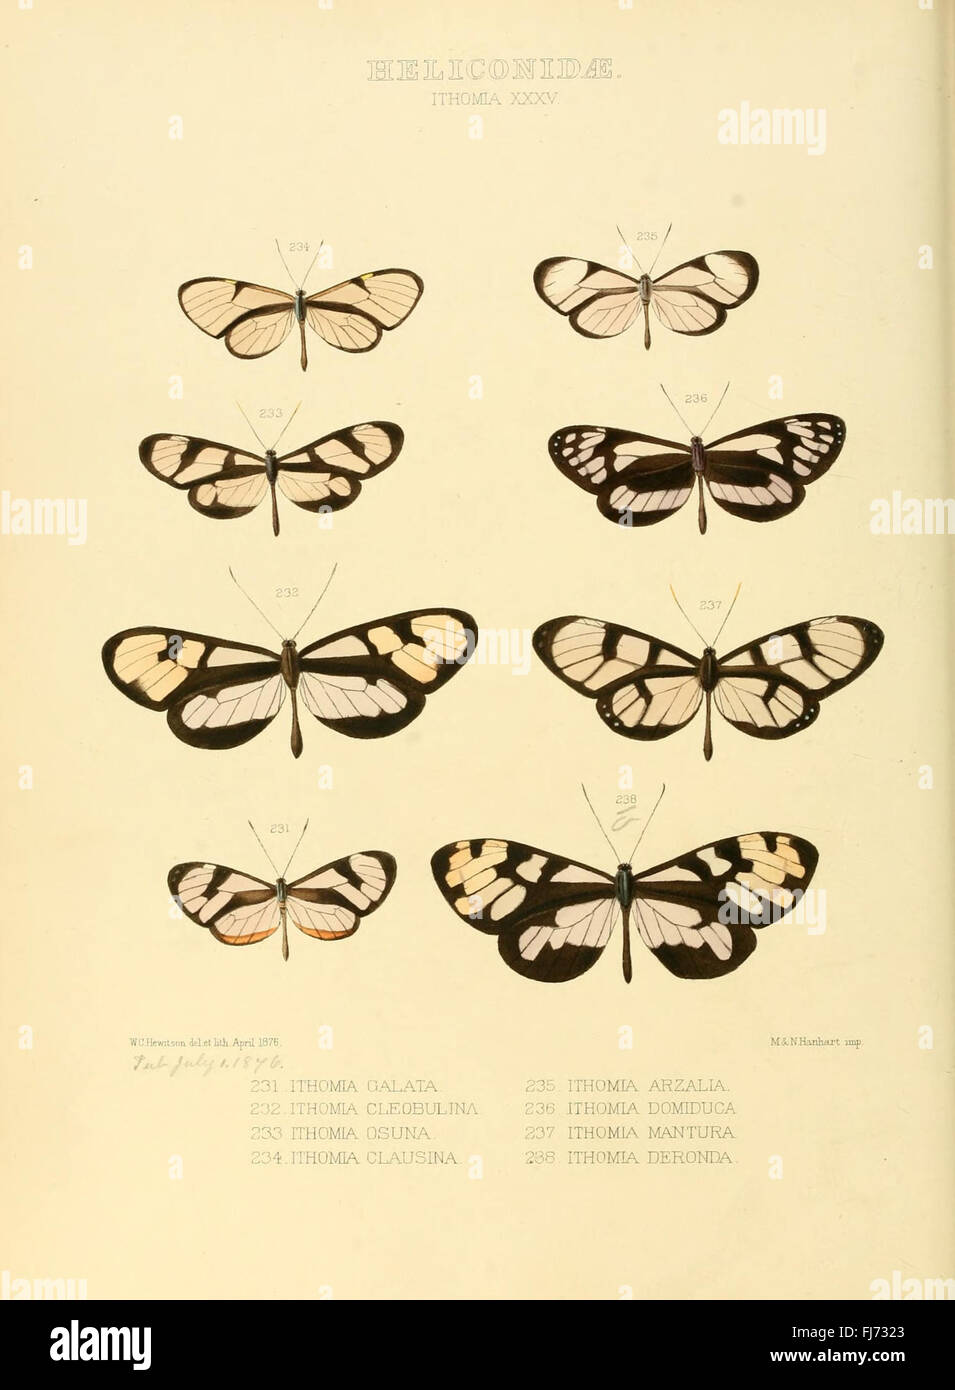 Illustrazioni di nuove specie di farfalle esotiche (Heliconidae- Ithomia XXXV) Foto Stock